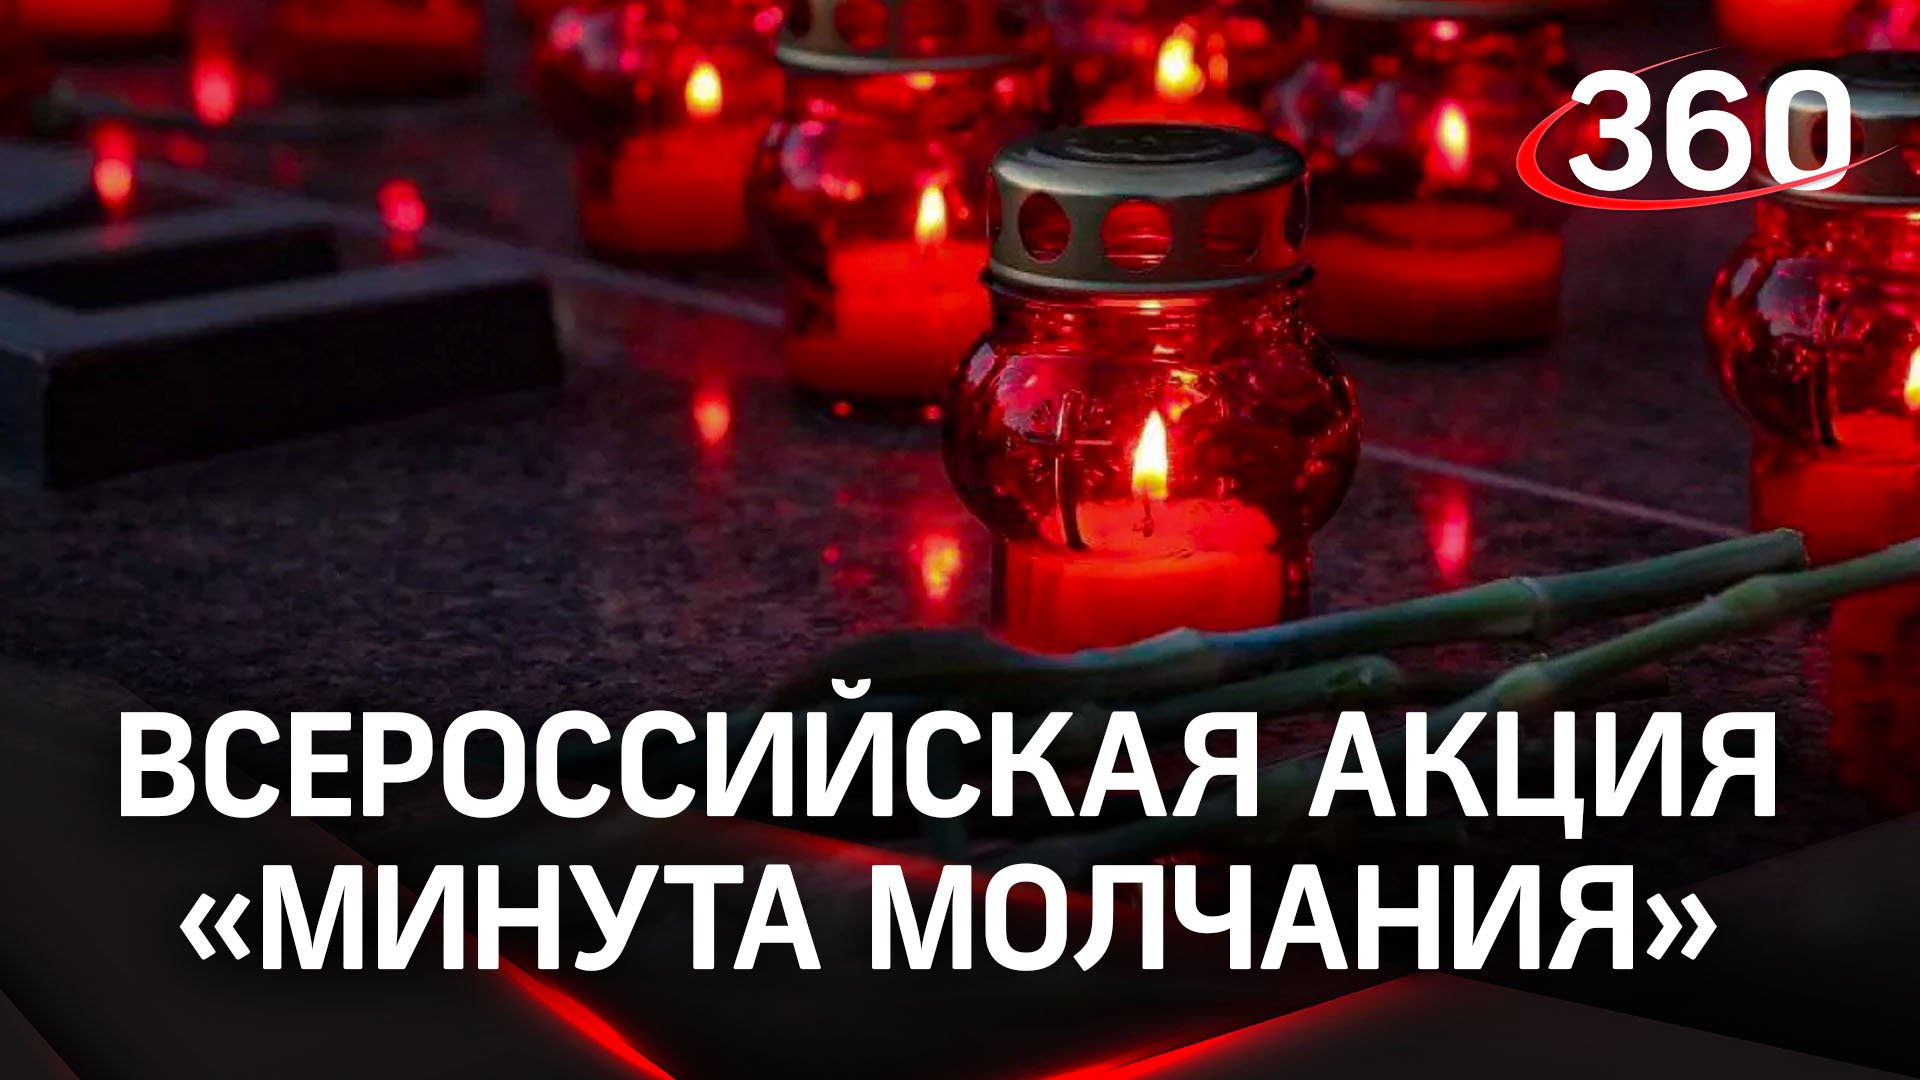 Жители Подмосковья смогут присоединиться к всероссийской акции «Минута молчания» 22 июня